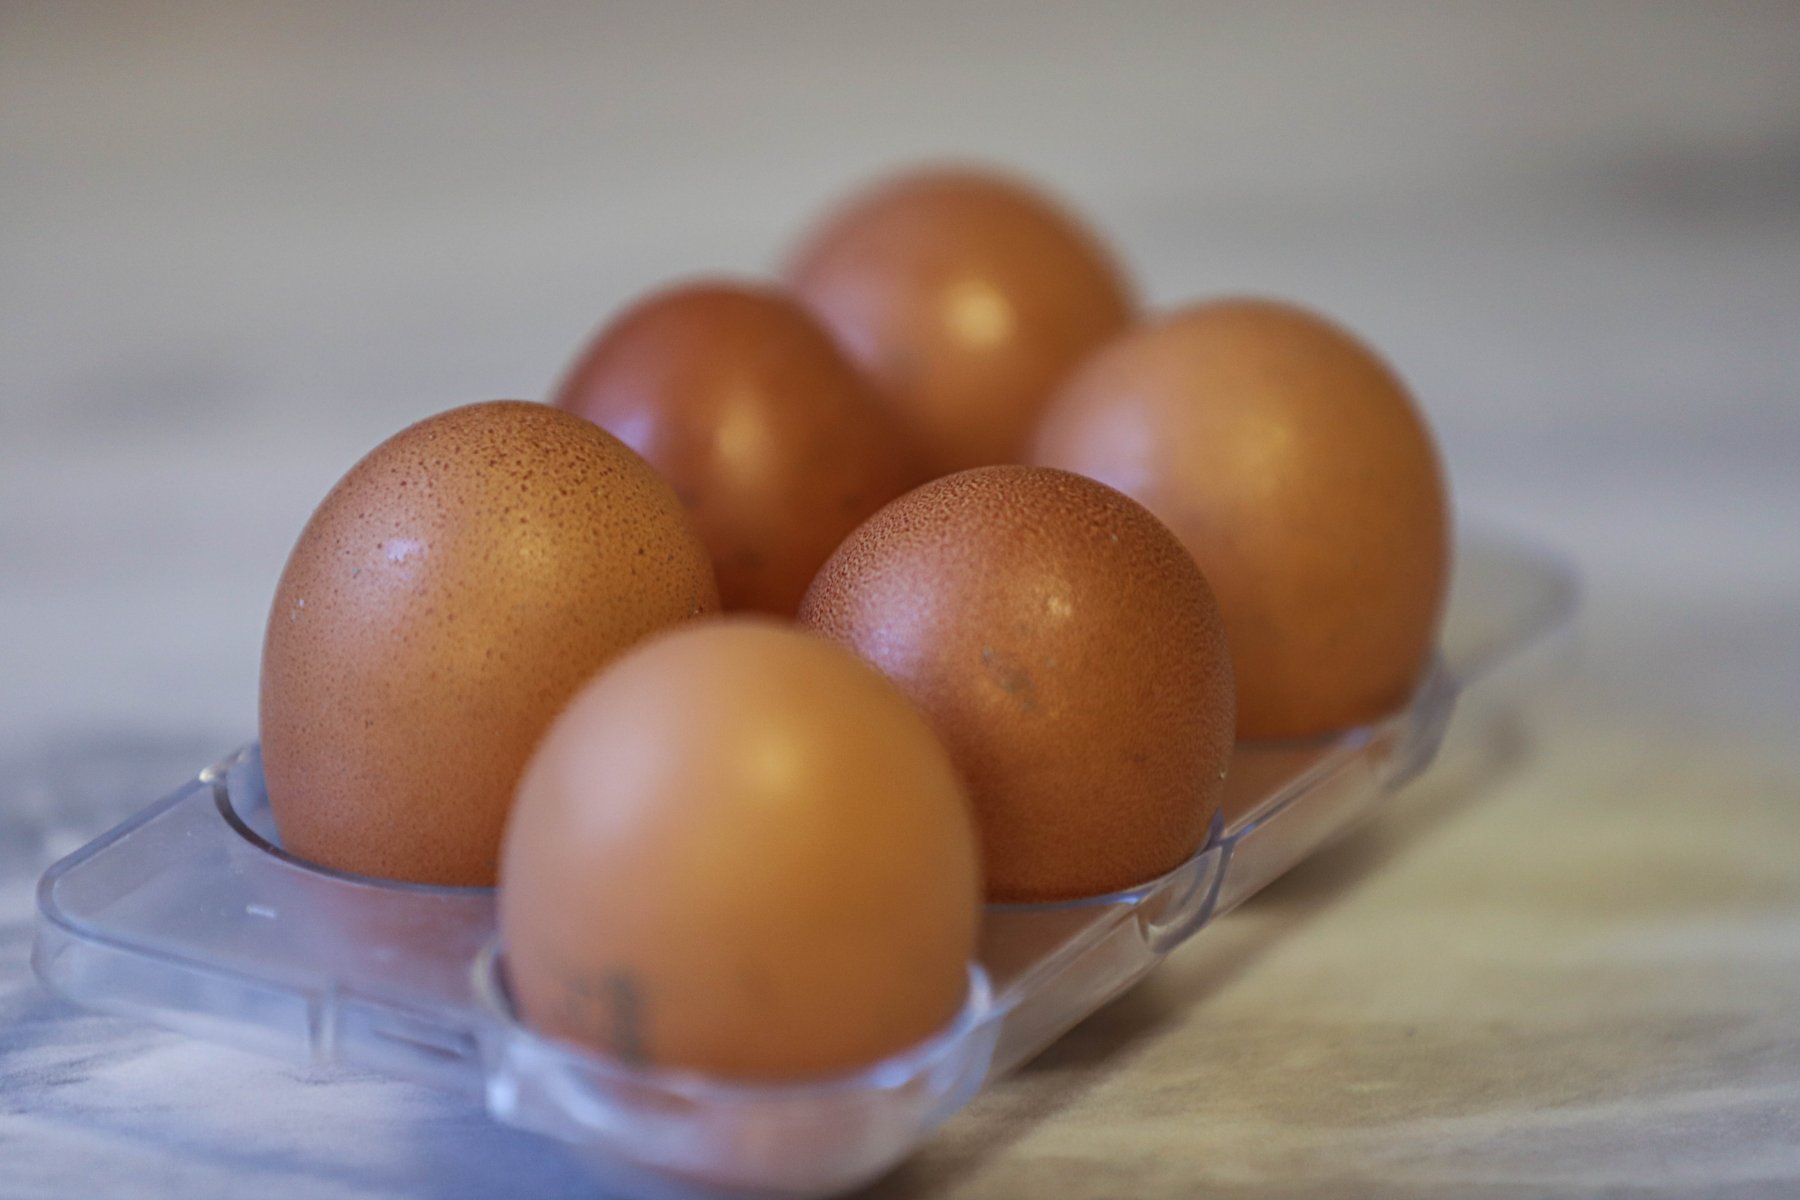 В России идет проверка крупных торговых сетей, связанная с ценами на яйца